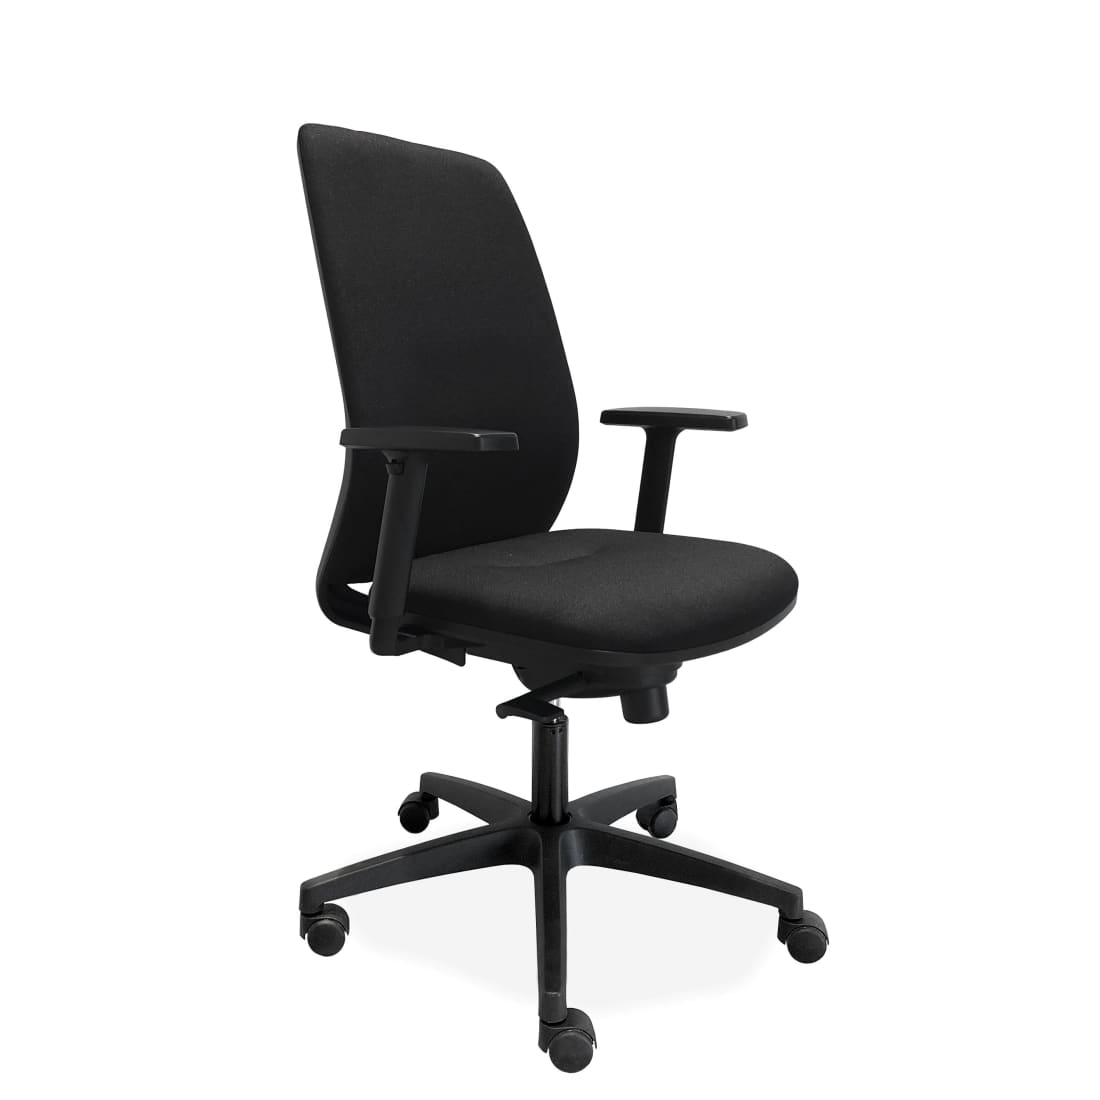 ergonomische-bureaustoel-comfort-de-singel-nen-1335-bureaustoelen-office-stoel-camera-437_77ce6a5f-3ce6-4c6c-a295-be05d660c8b1-2.jpg